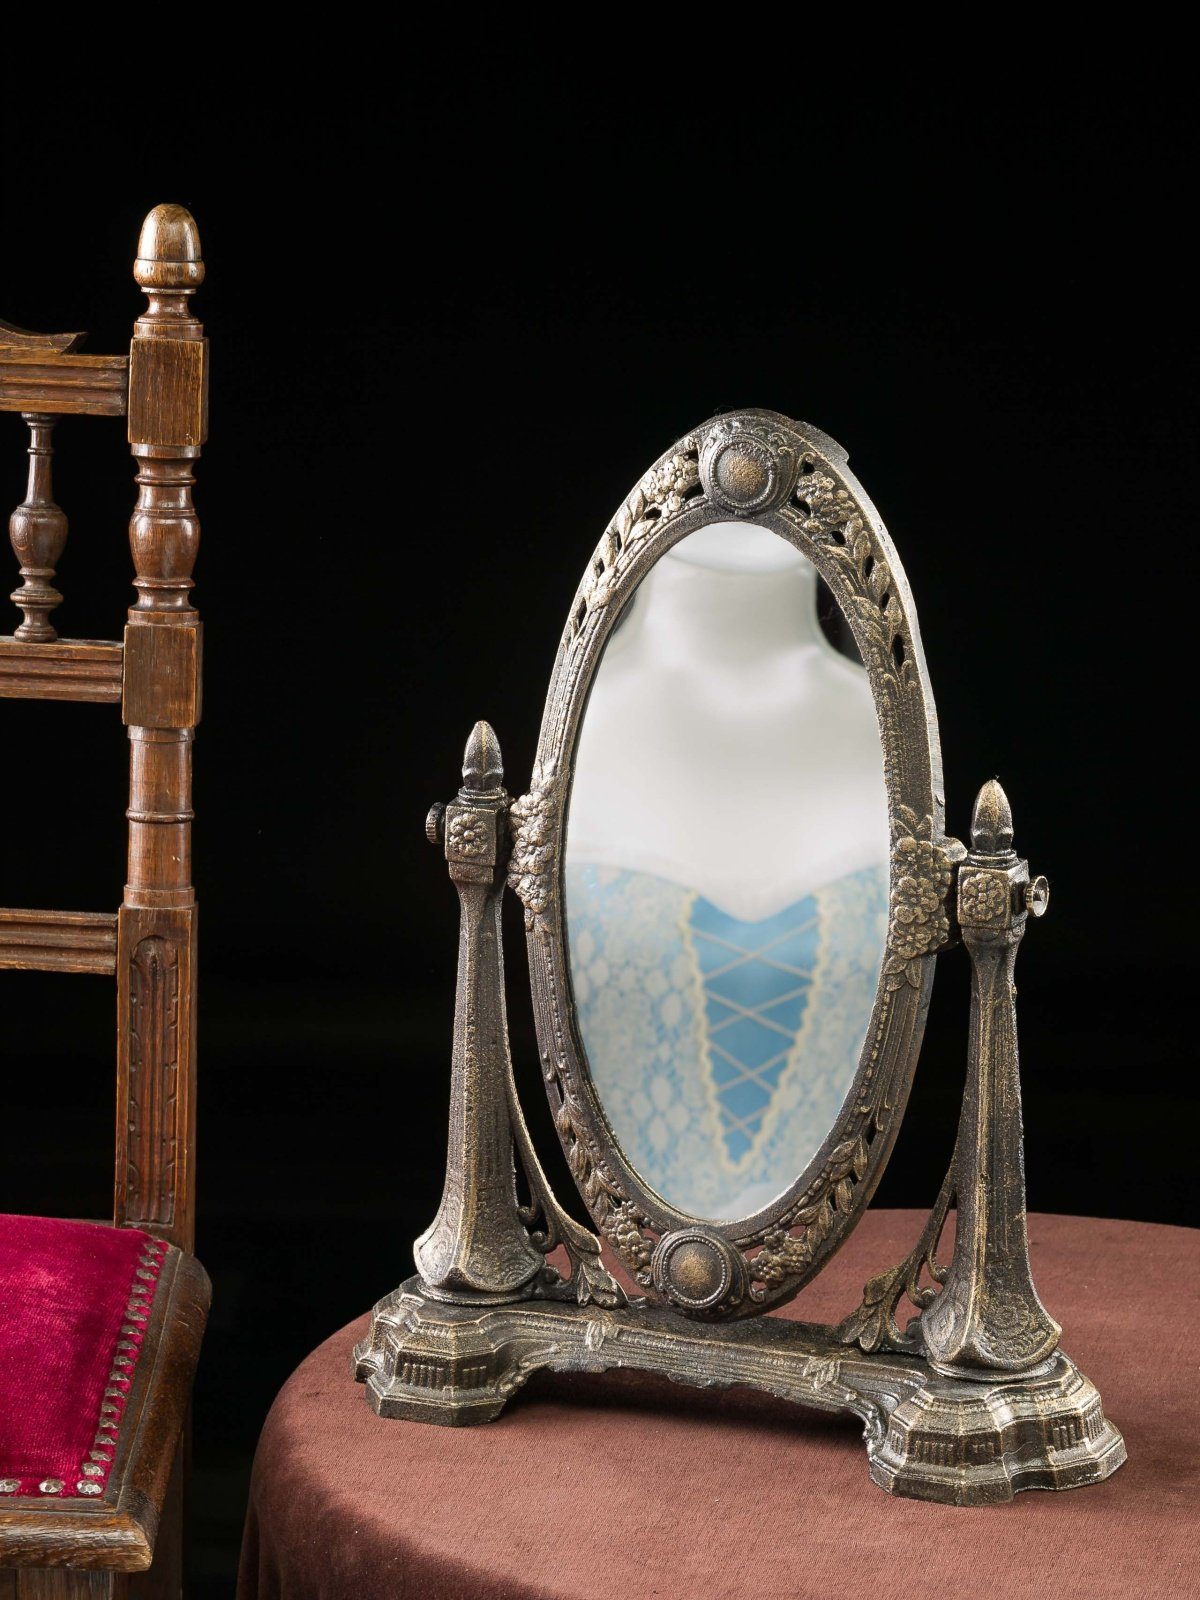 Aubaho Standspiegel Spiegel Schminkspiegel antik i Jugendstil Eisen Kosmetikspiegel mirror